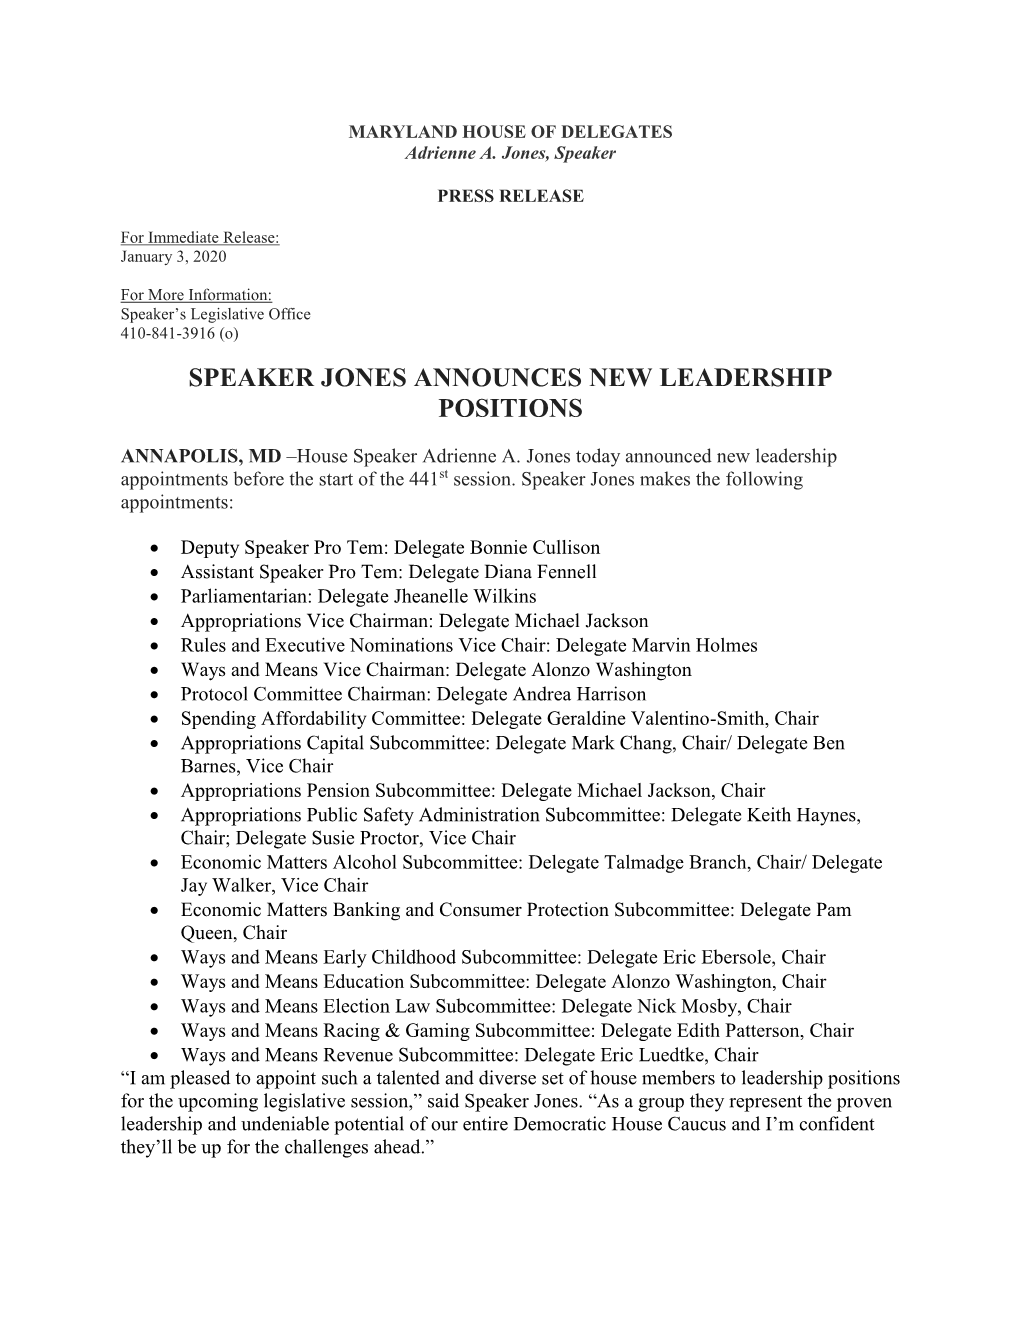 Speaker Jones Announces New Leadership Positions